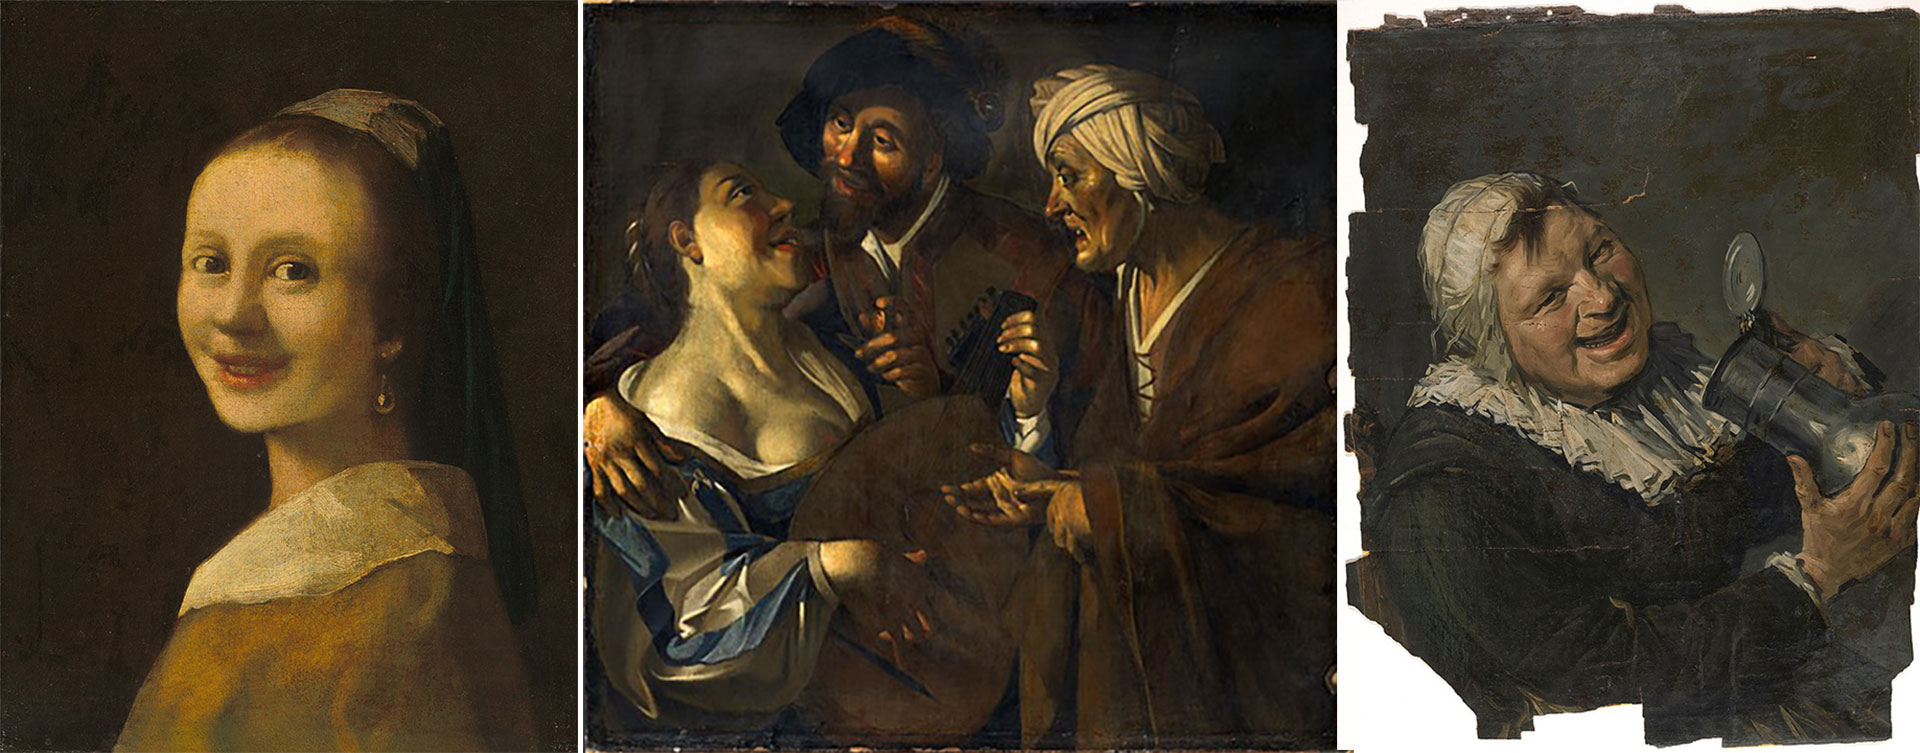 Vermeer, Dirck van Baburen y Hals, según van Meegeren